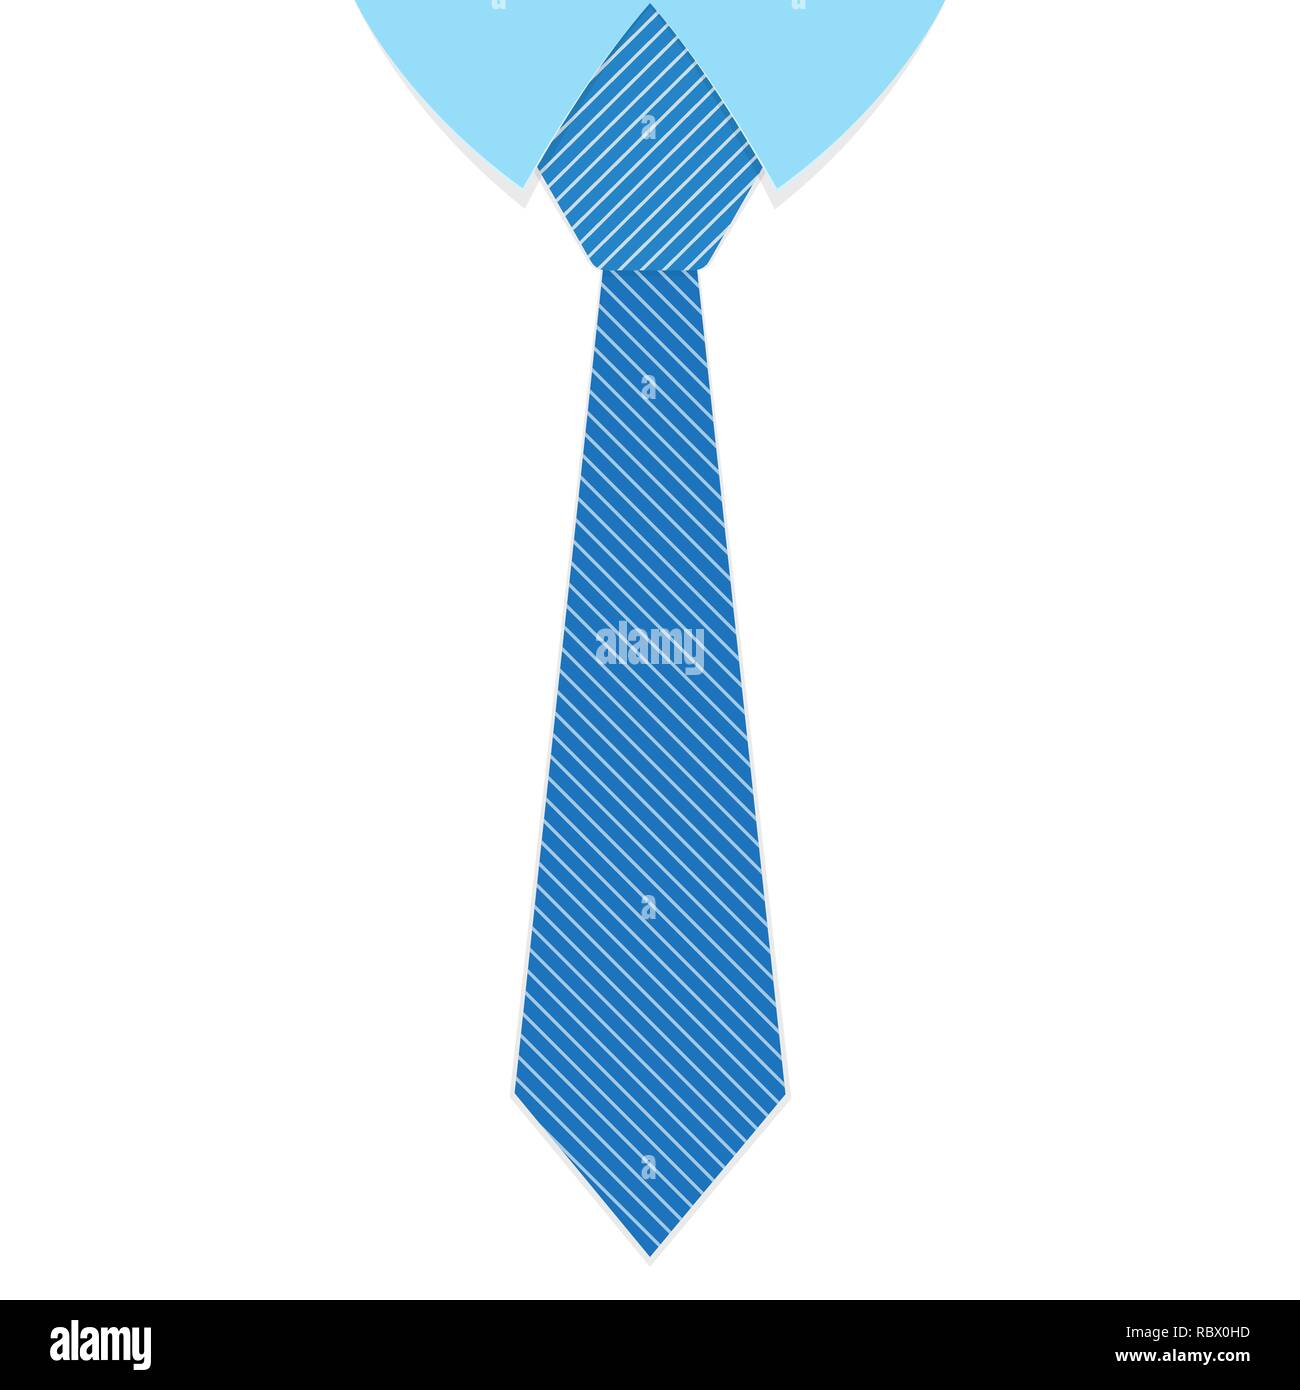 Cravate bleue Banque d'images vectorielles - Alamy